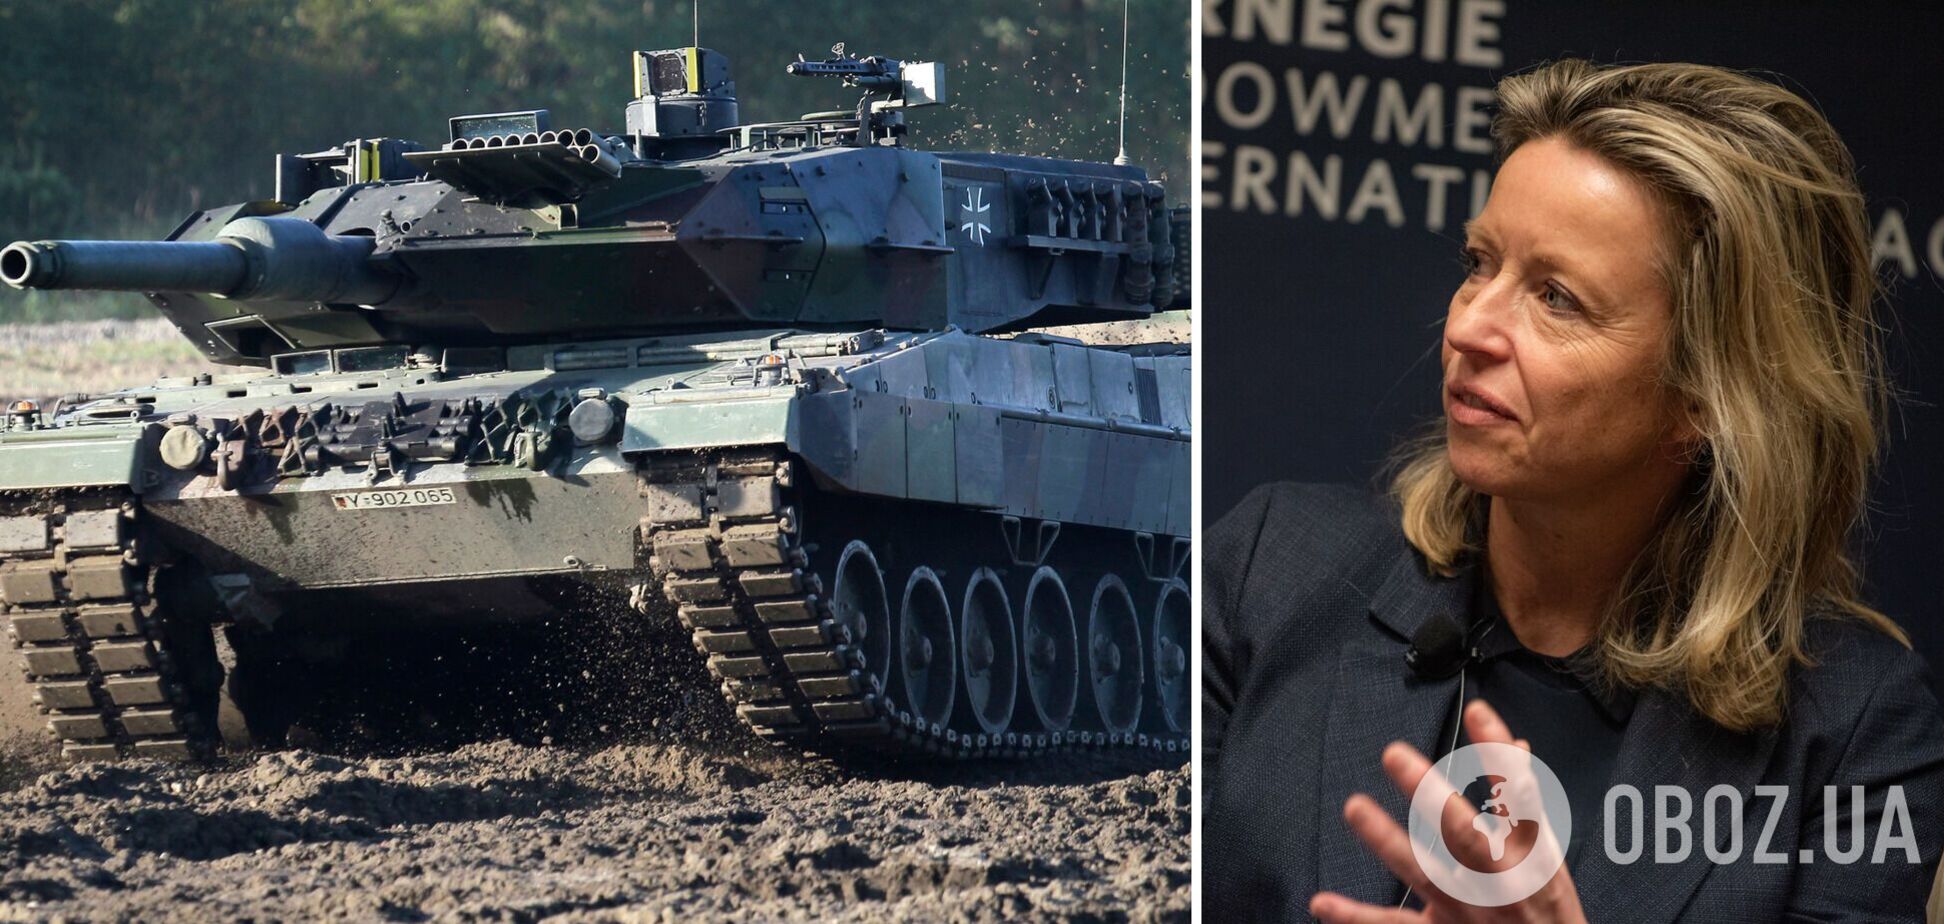 Нідерланди разом із Німеччиною та Данією передадуть Україні щонайменше 100 танків Leopard 1A5 замість орендованих у ФРН